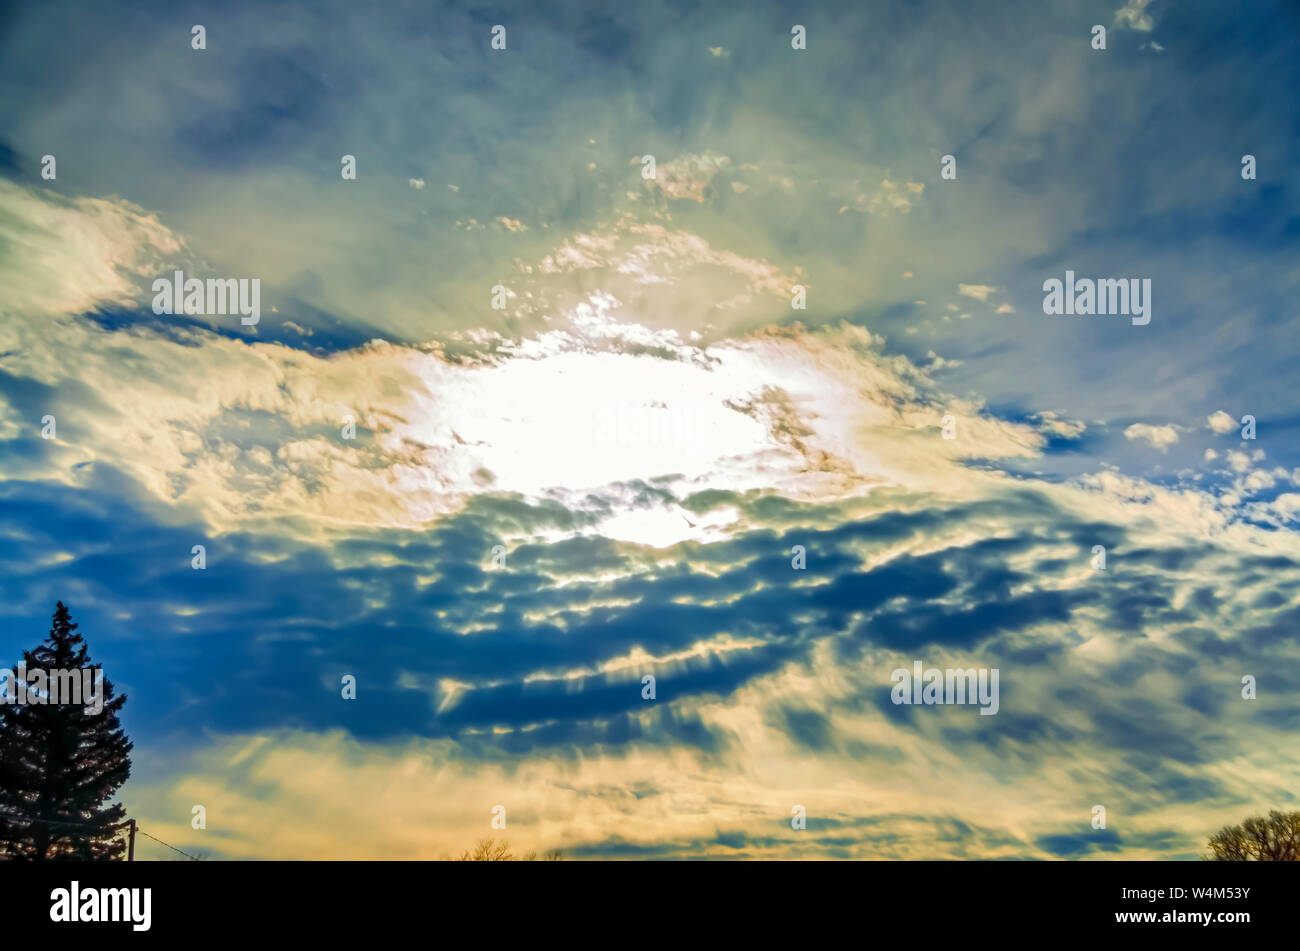 Das Lied und Tanz zwischen Sonne und Wolken ein dramatischer Abendhimmel zu erstellen. Stockfoto